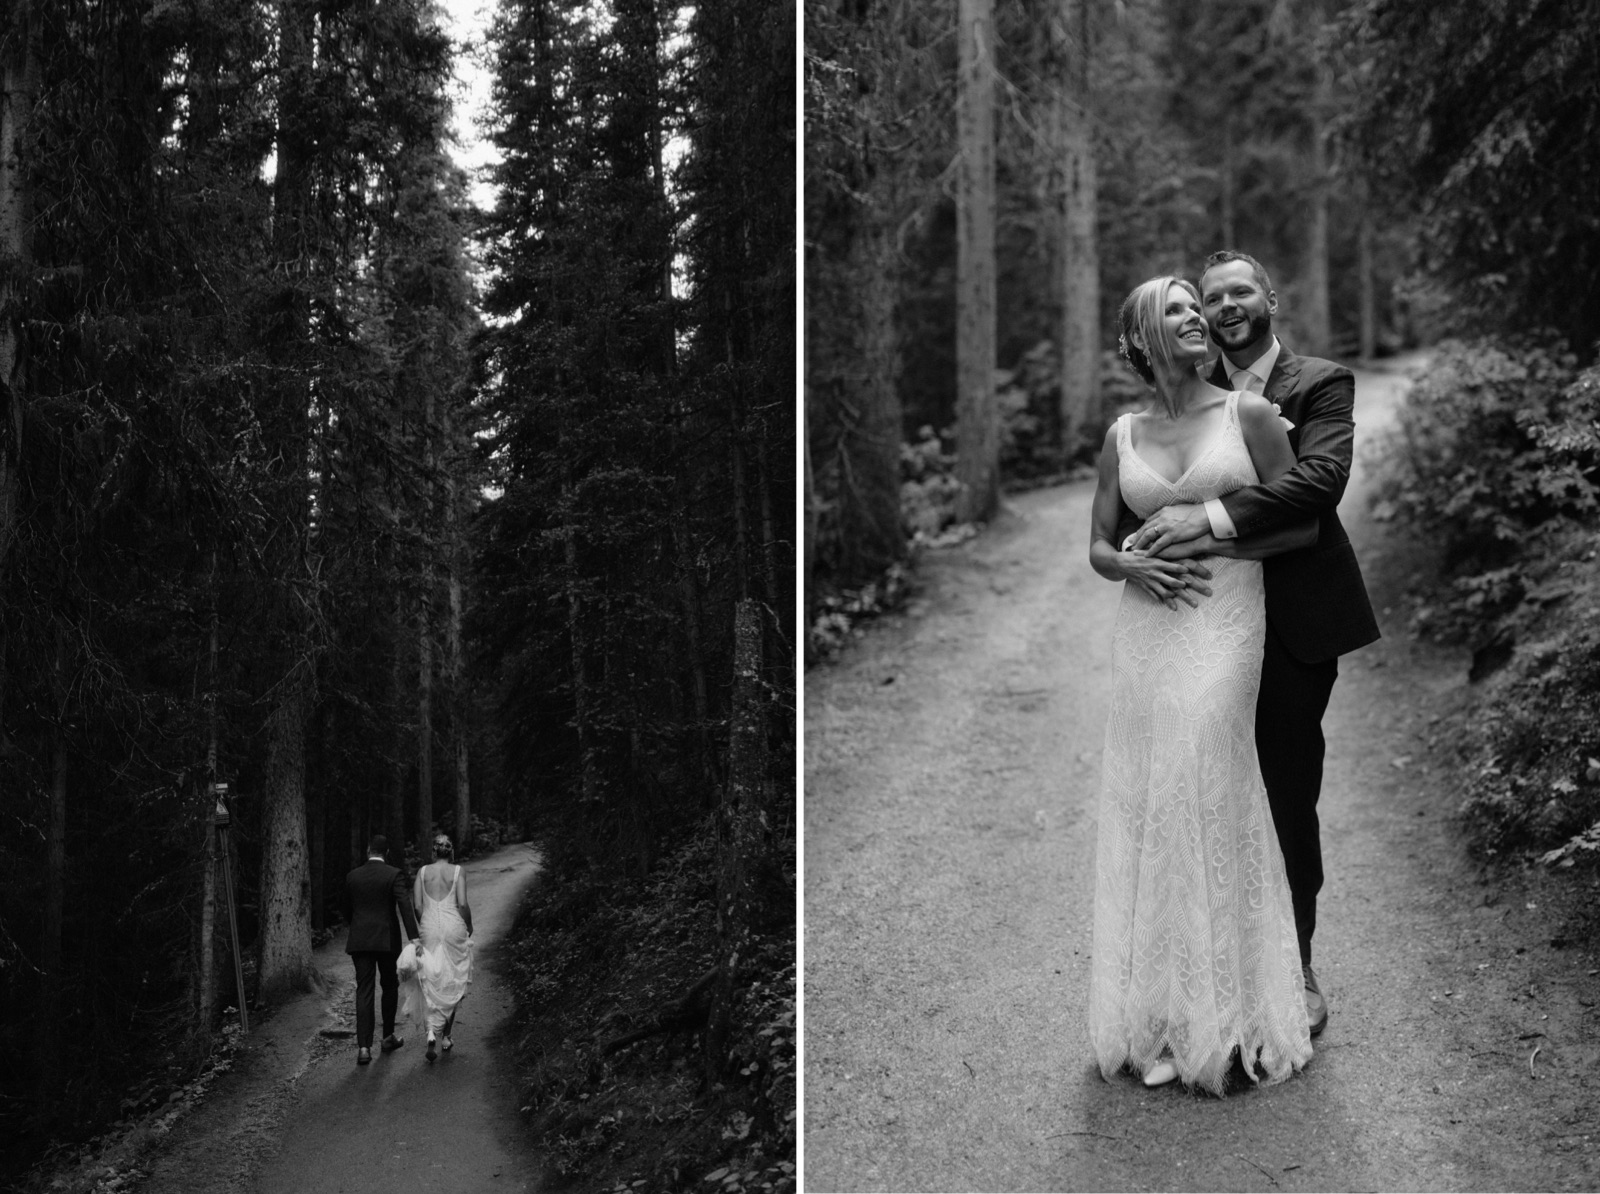 Moody forest wedding portraits in Banff